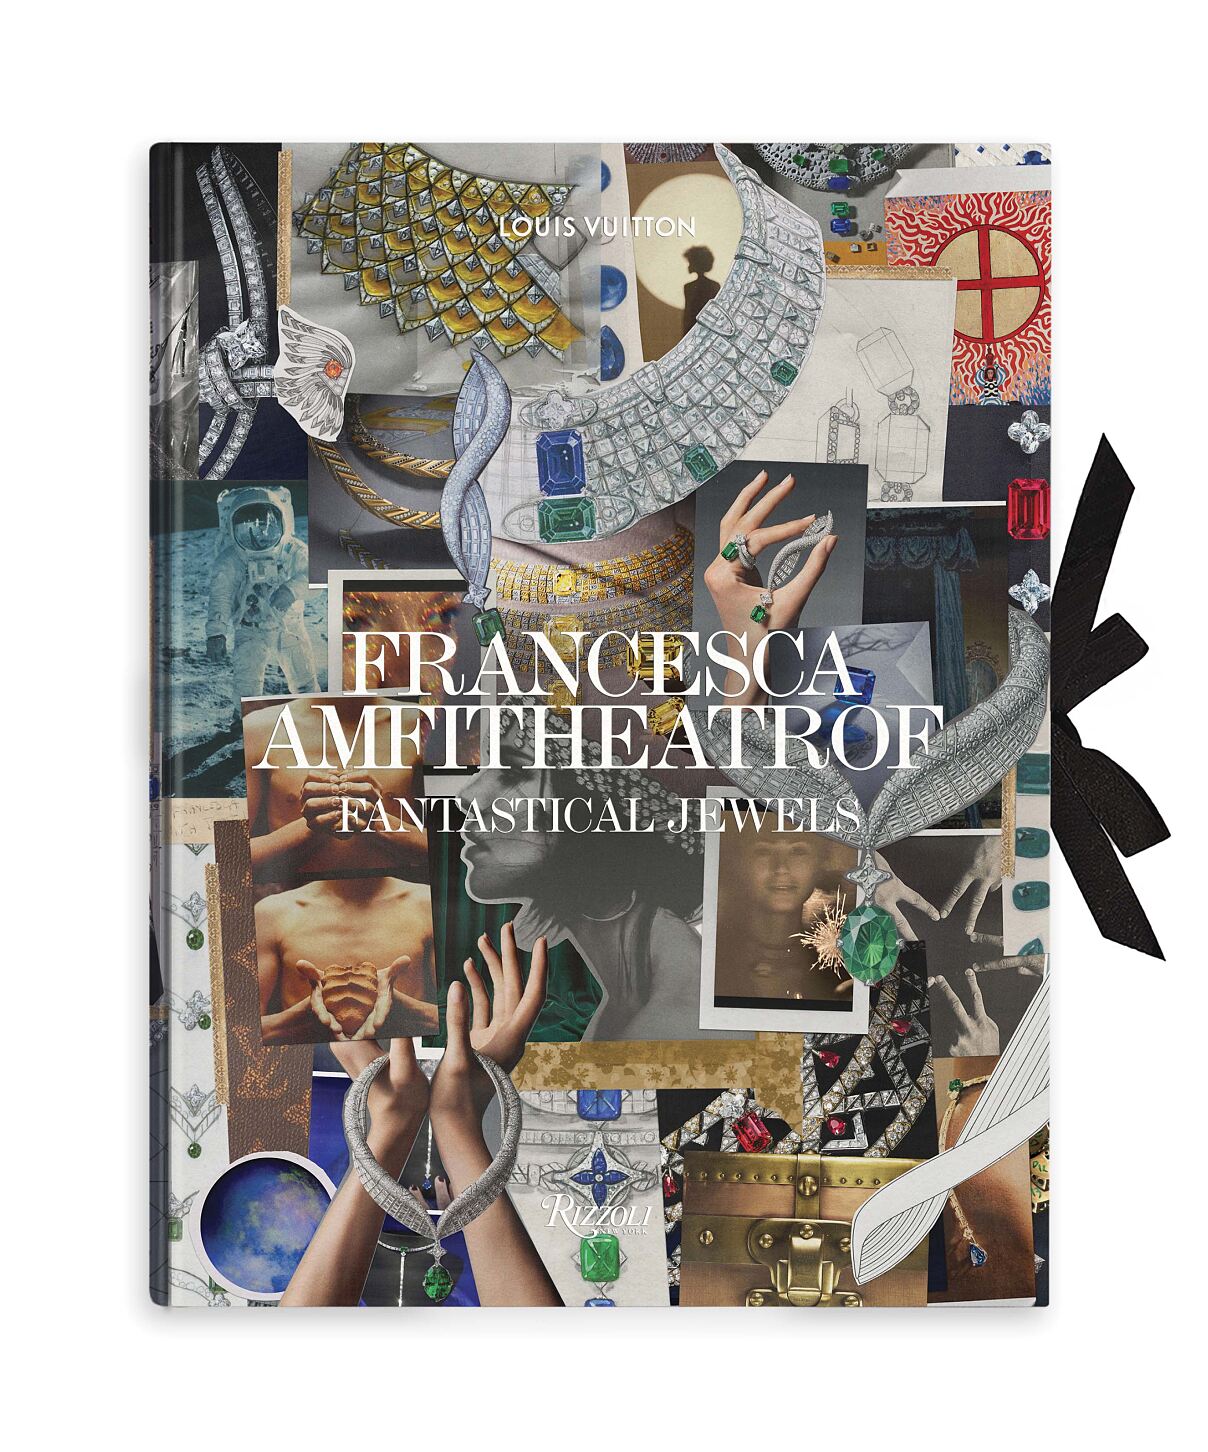 Louis Vuitton_Fantastic Jewels by Francesca Amfitheatrof_Cover